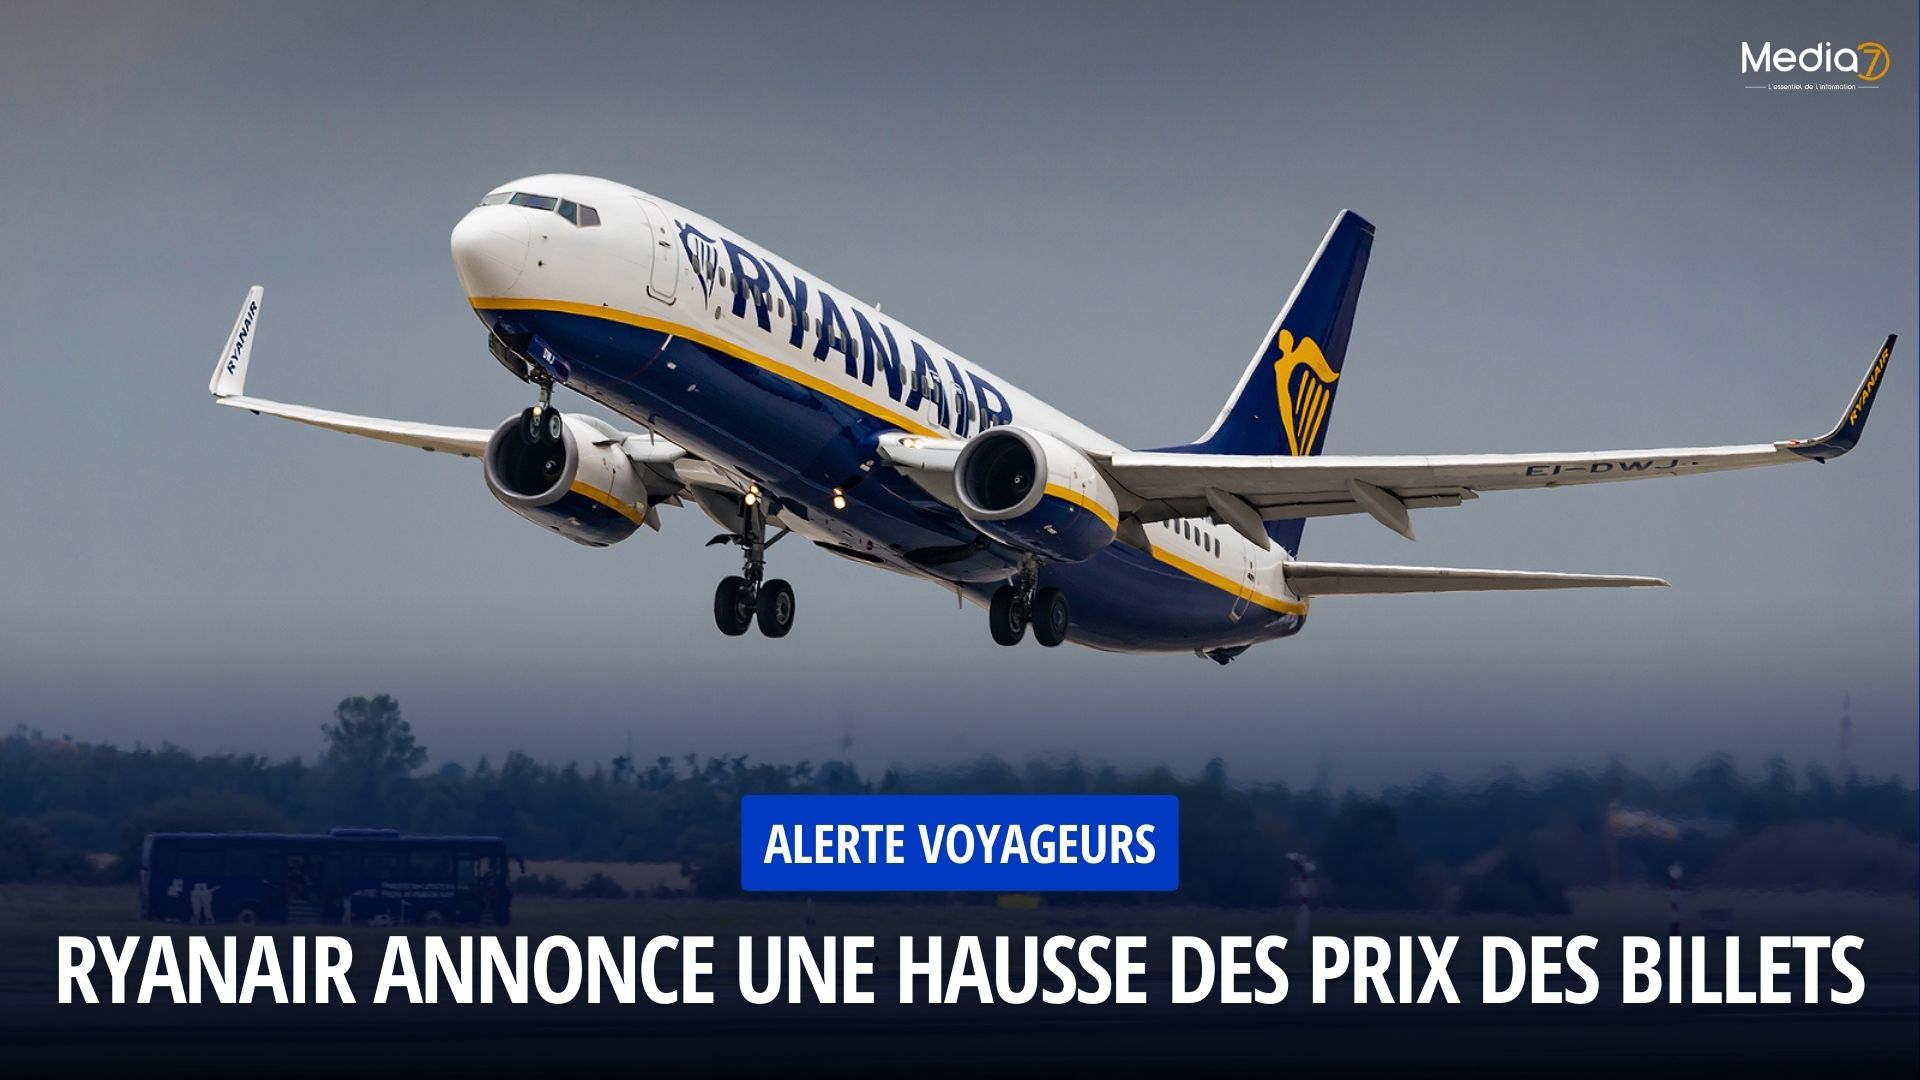 Ryanair Annonce une Hausse des Prix des Billets